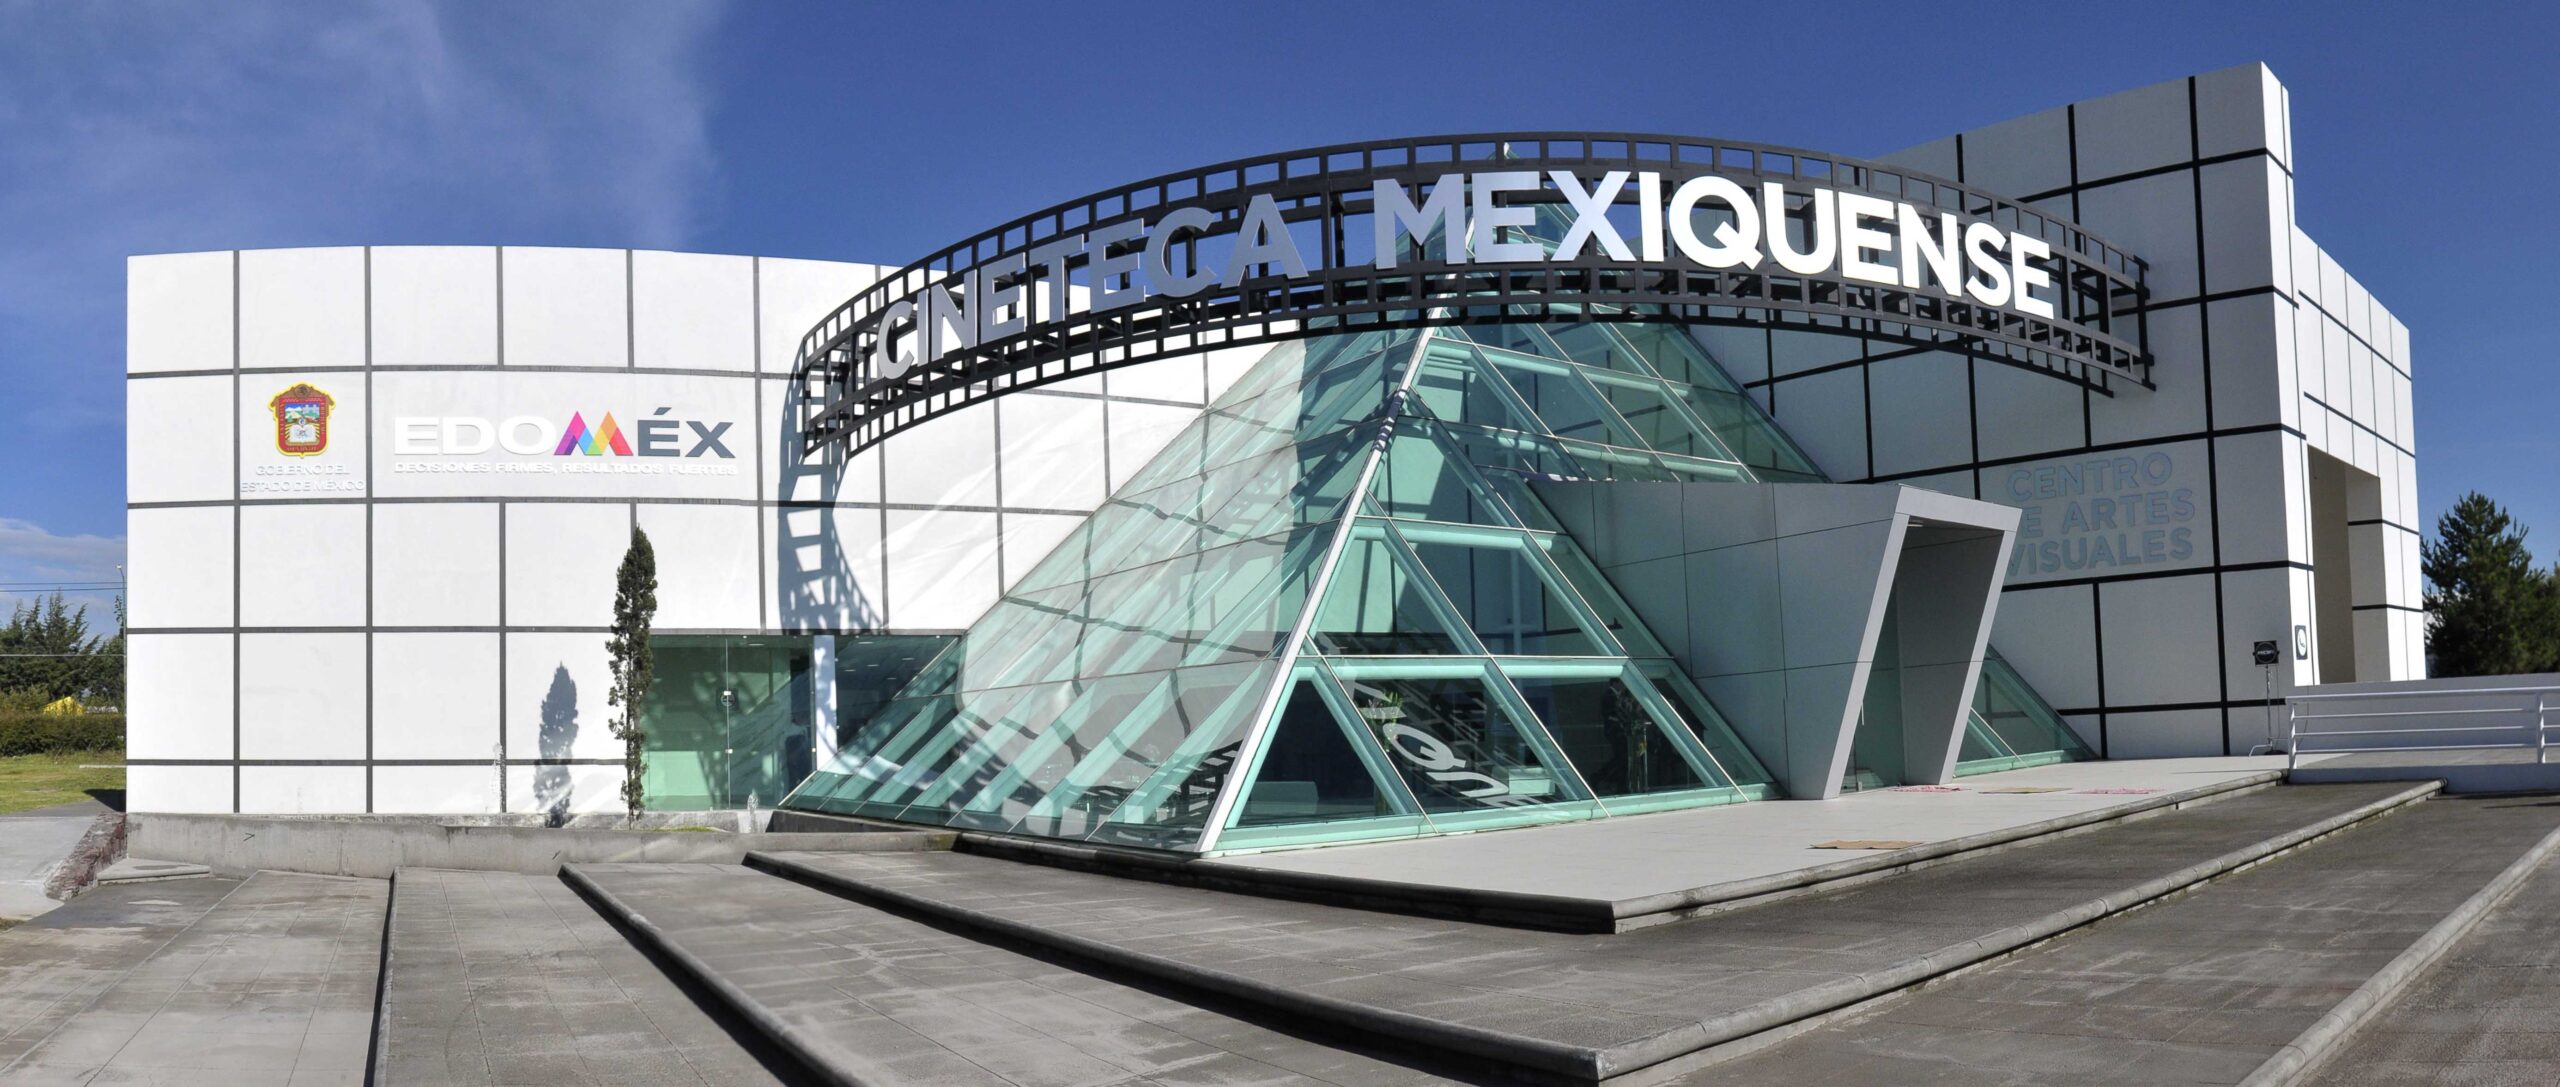 Cineteca Mexiquense: el espacio para la pasión cinematográfica